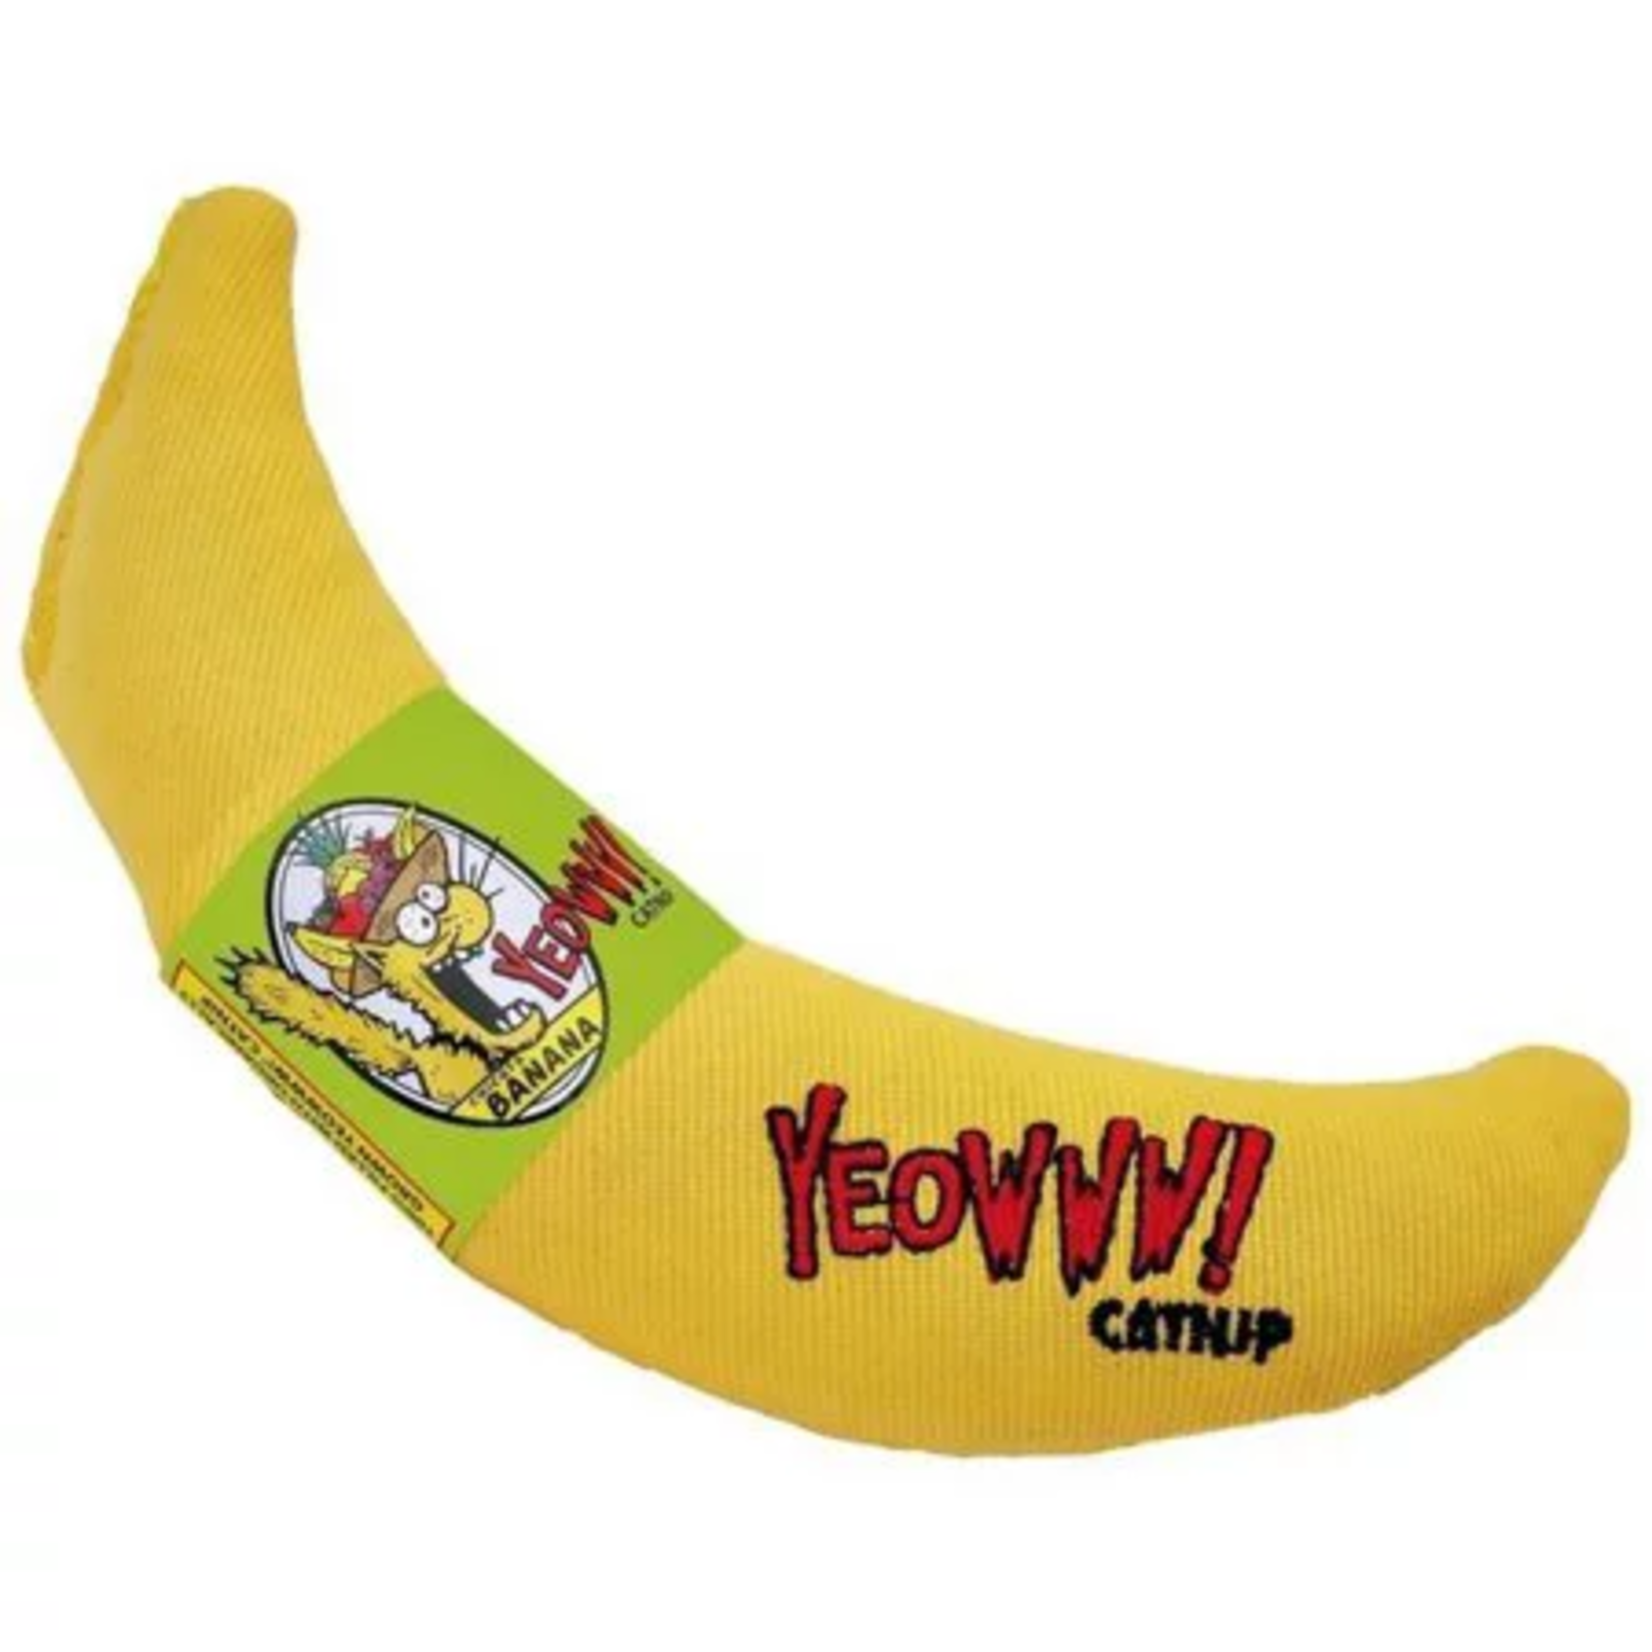 Yeow Yeowww! Banana Catnip Cat Toy Yellow 7"